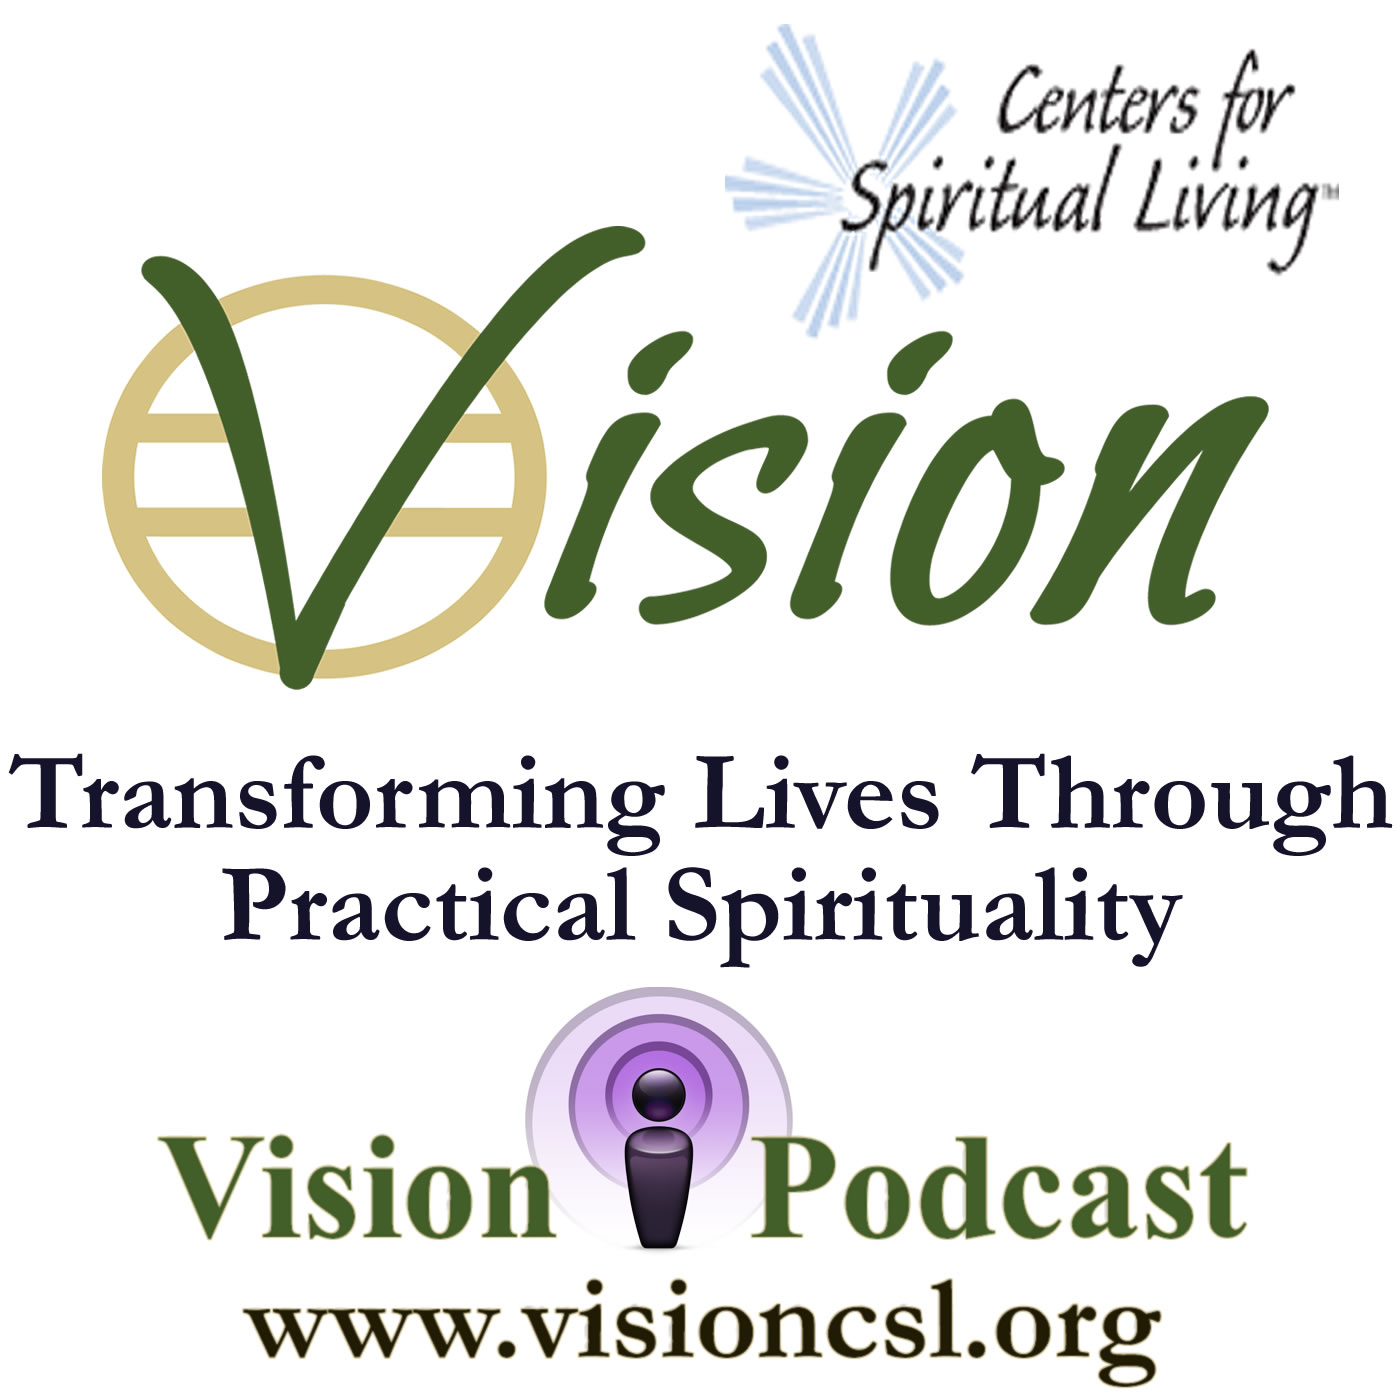 VISION: A Center For Spiritual Living